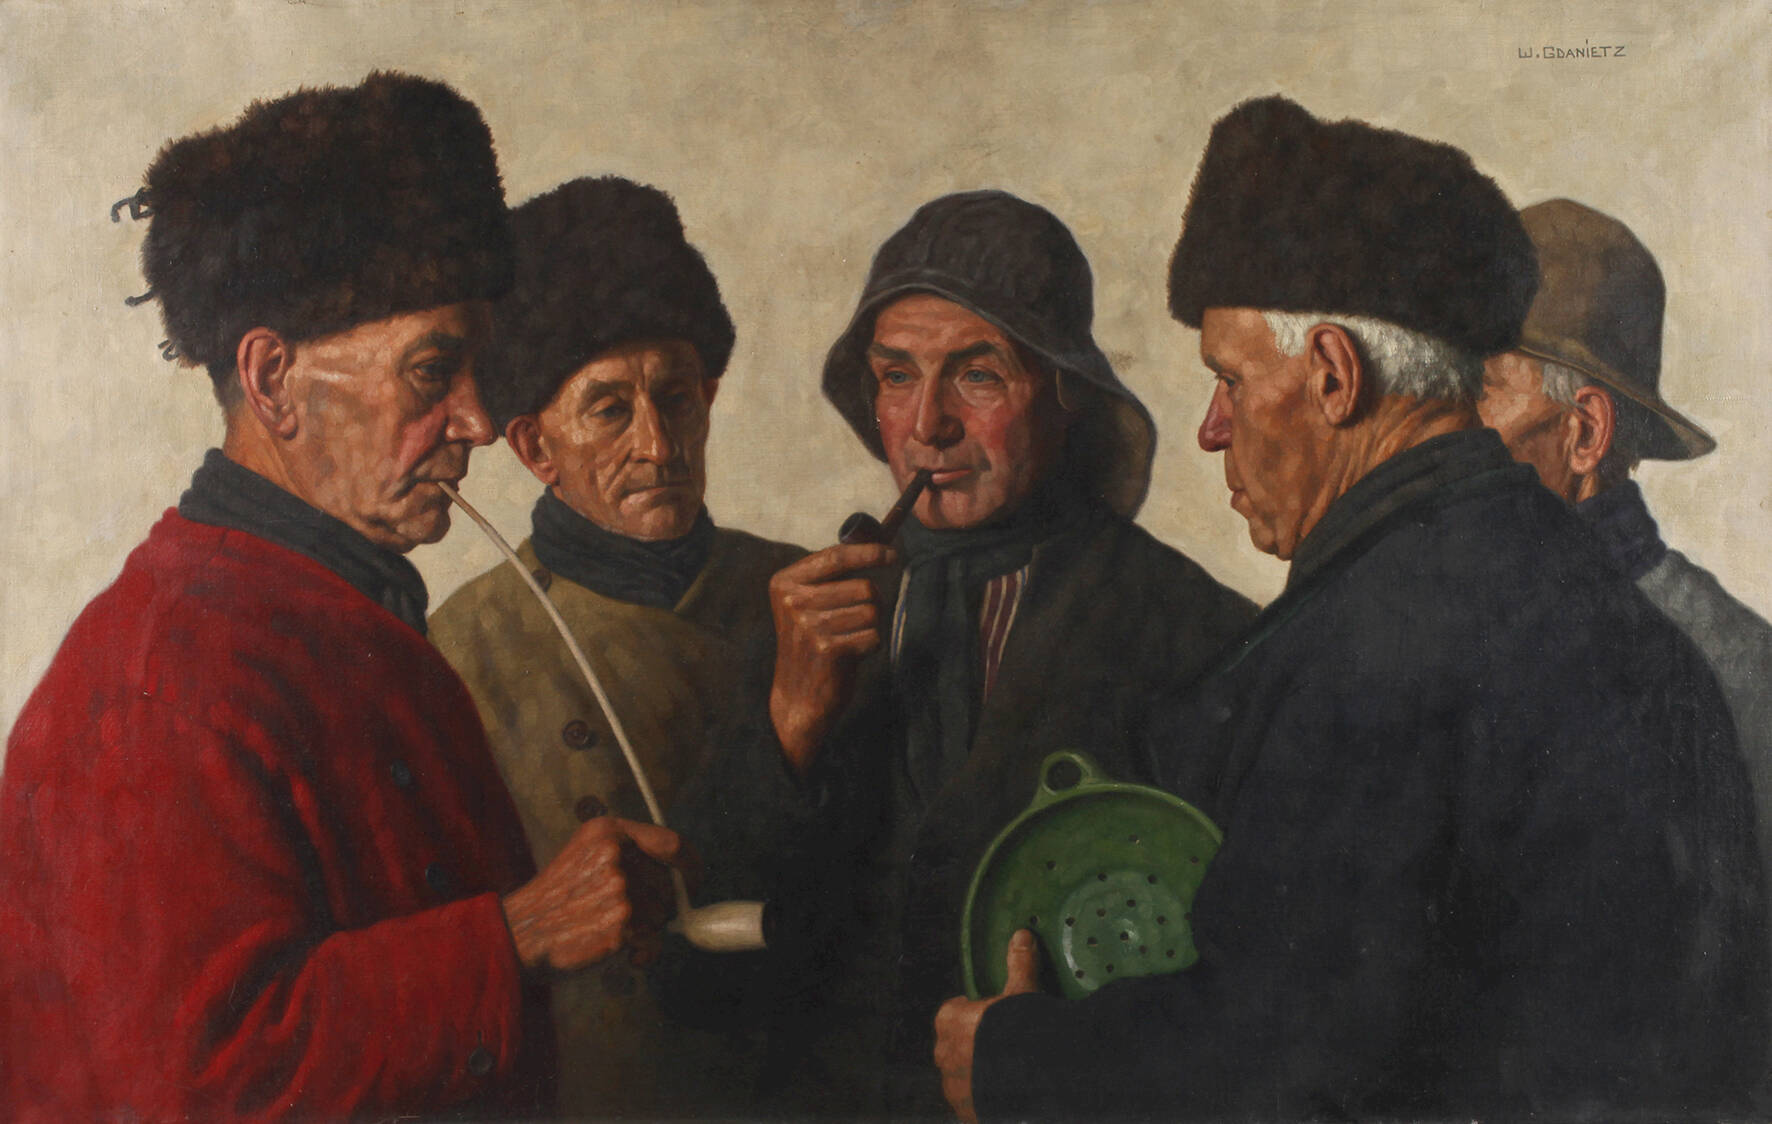 Wilhelm Gdanietz, "5 holländische Köpfe"